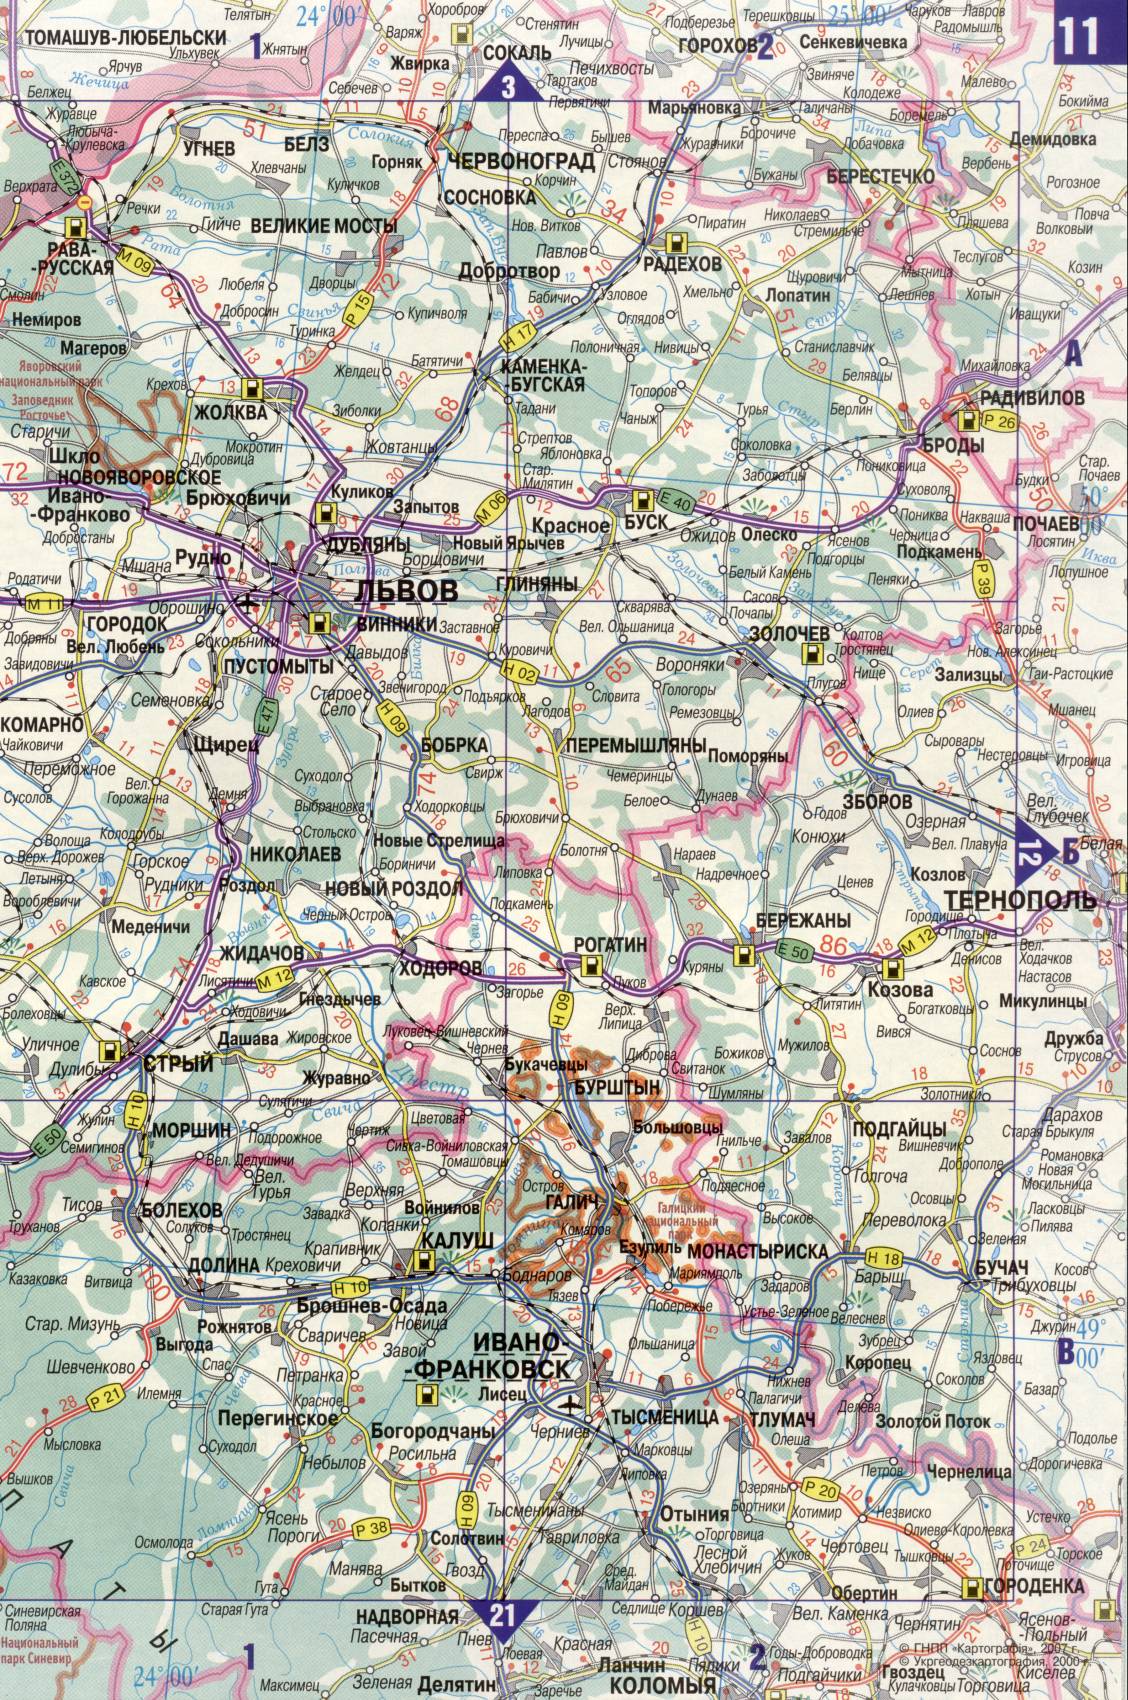 Karte der Ukraine. Detaillierte Straßenkarte der Ukraine avtomobilnog Satin. kostenlos herunterladen, B1